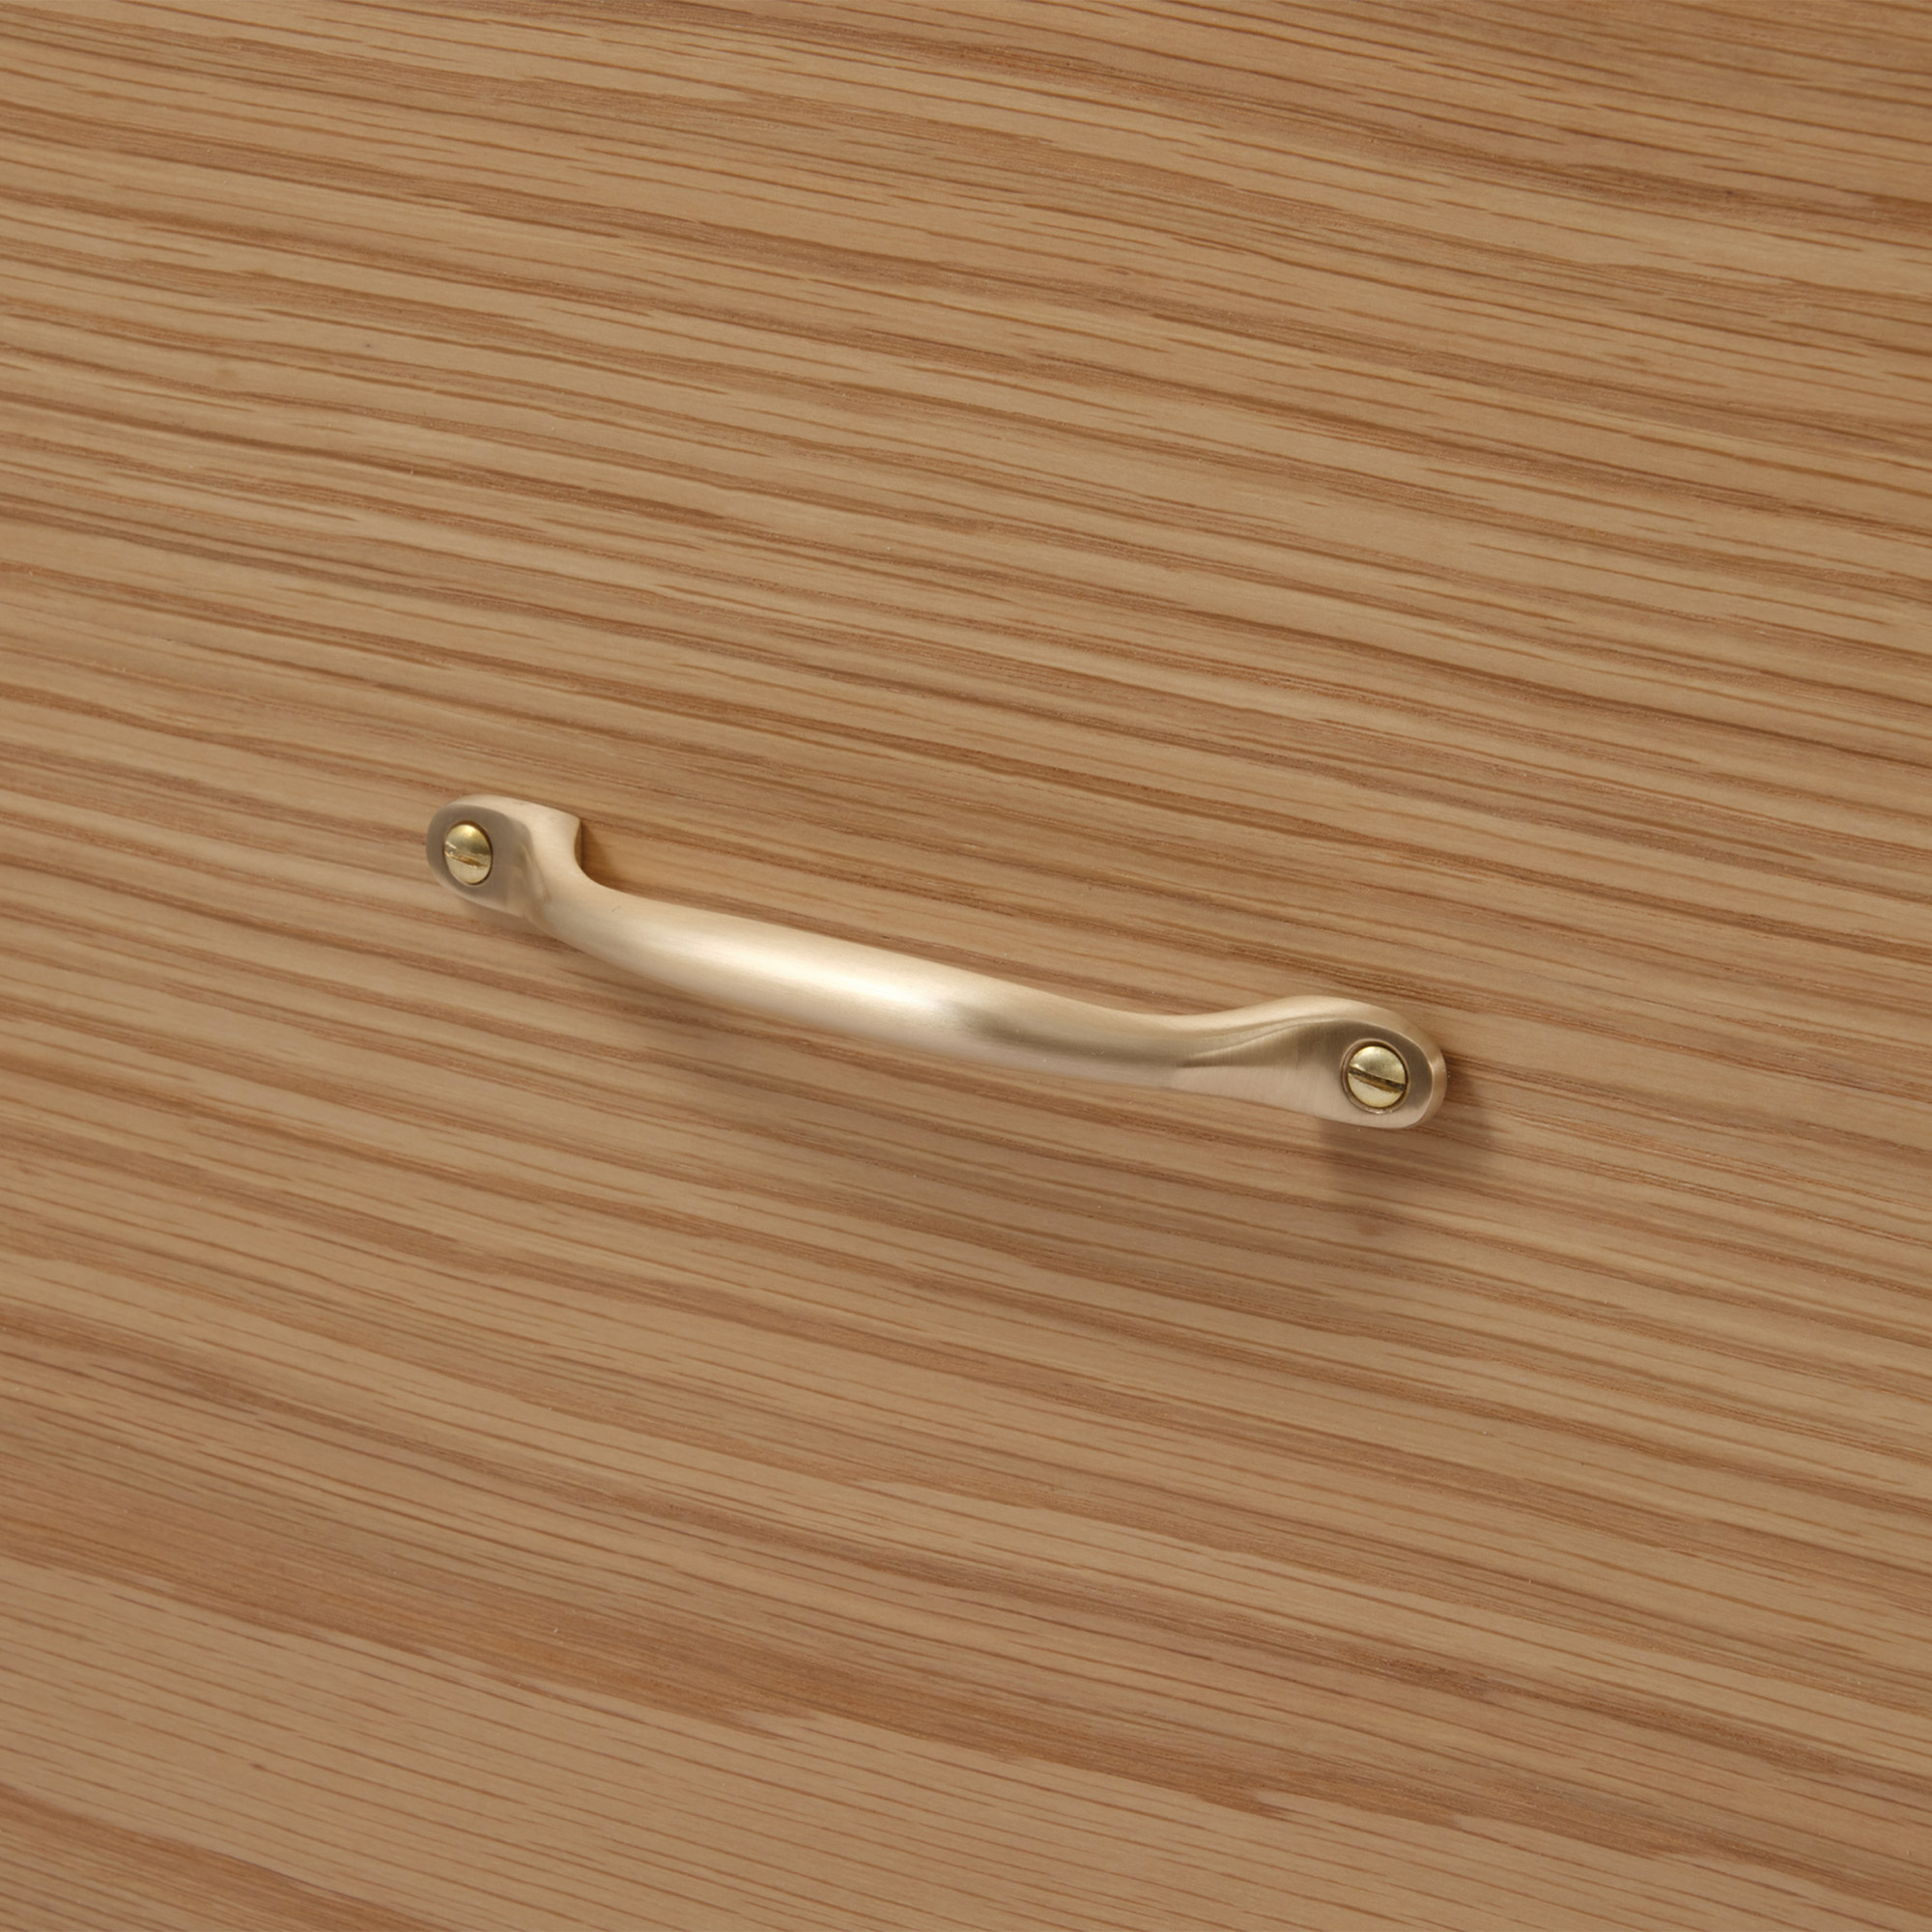 鋳物キッチン把手 ハンドル 真鍮 PS-HD018-11-G141 オーク材と合わせたイメージ